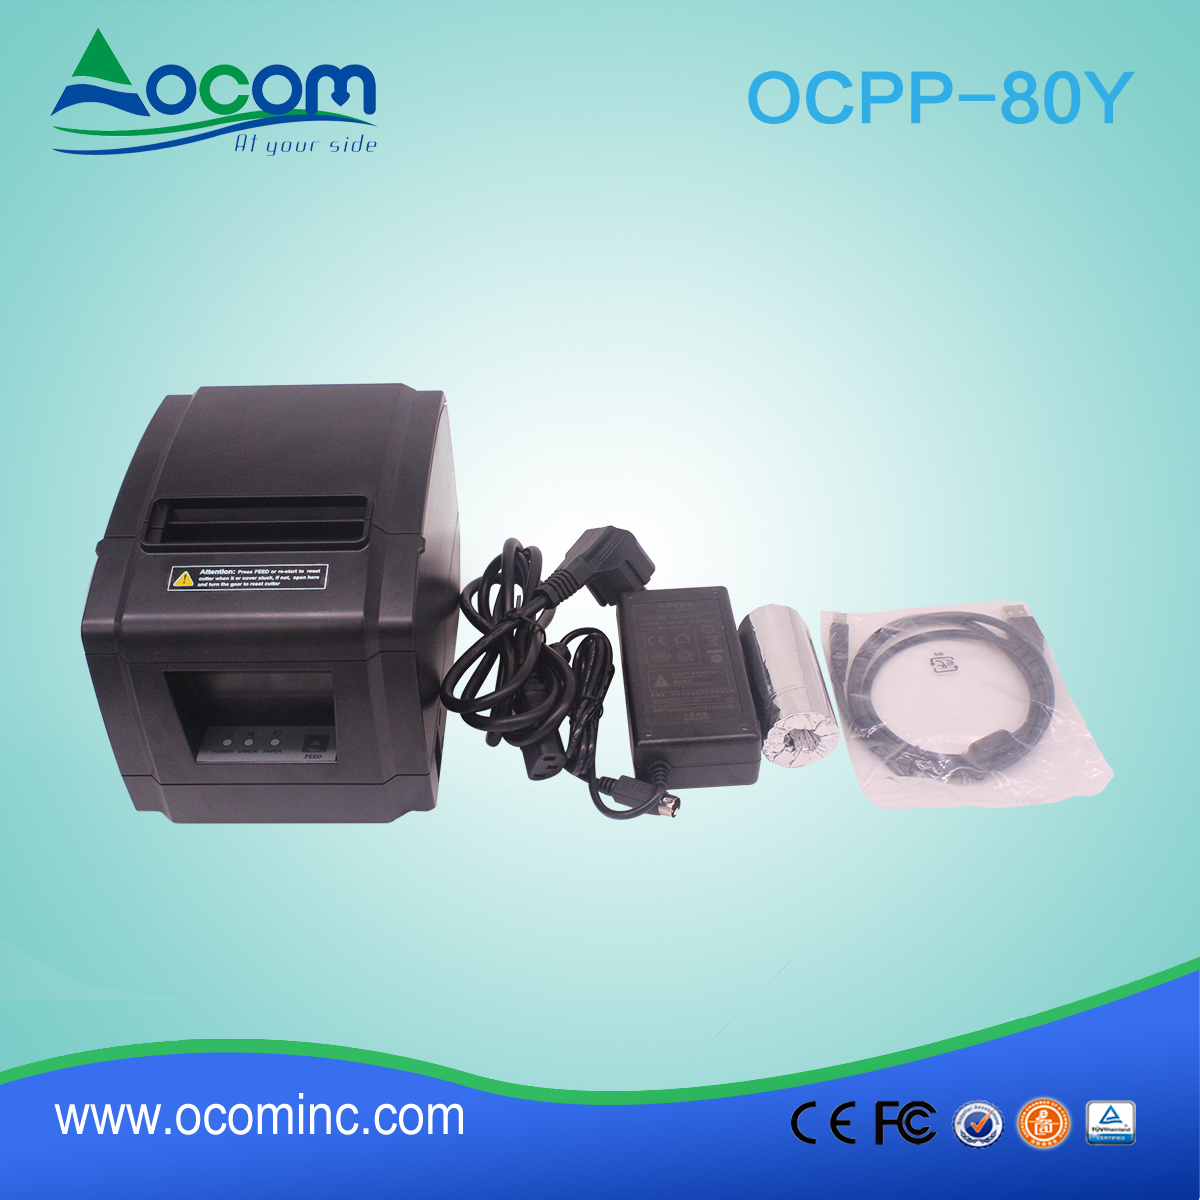 OCPP-80Y-Chine fait bas imprimante thermique perdue de 80mm